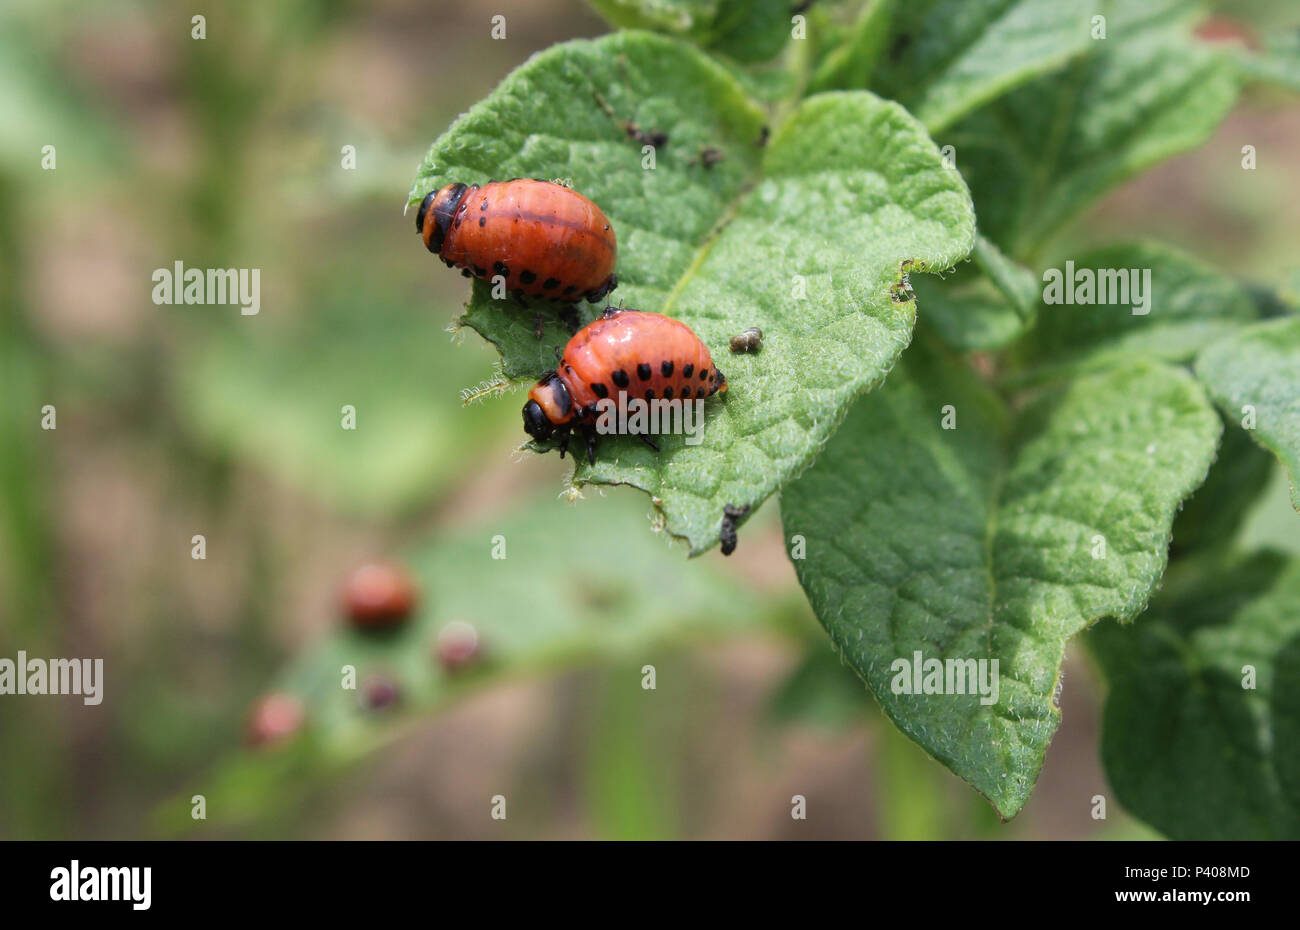 Two larvae of the Colorado potato beetle (Leptinotarsa decemlineata), feeding on potato plant foliage. Stock Photo